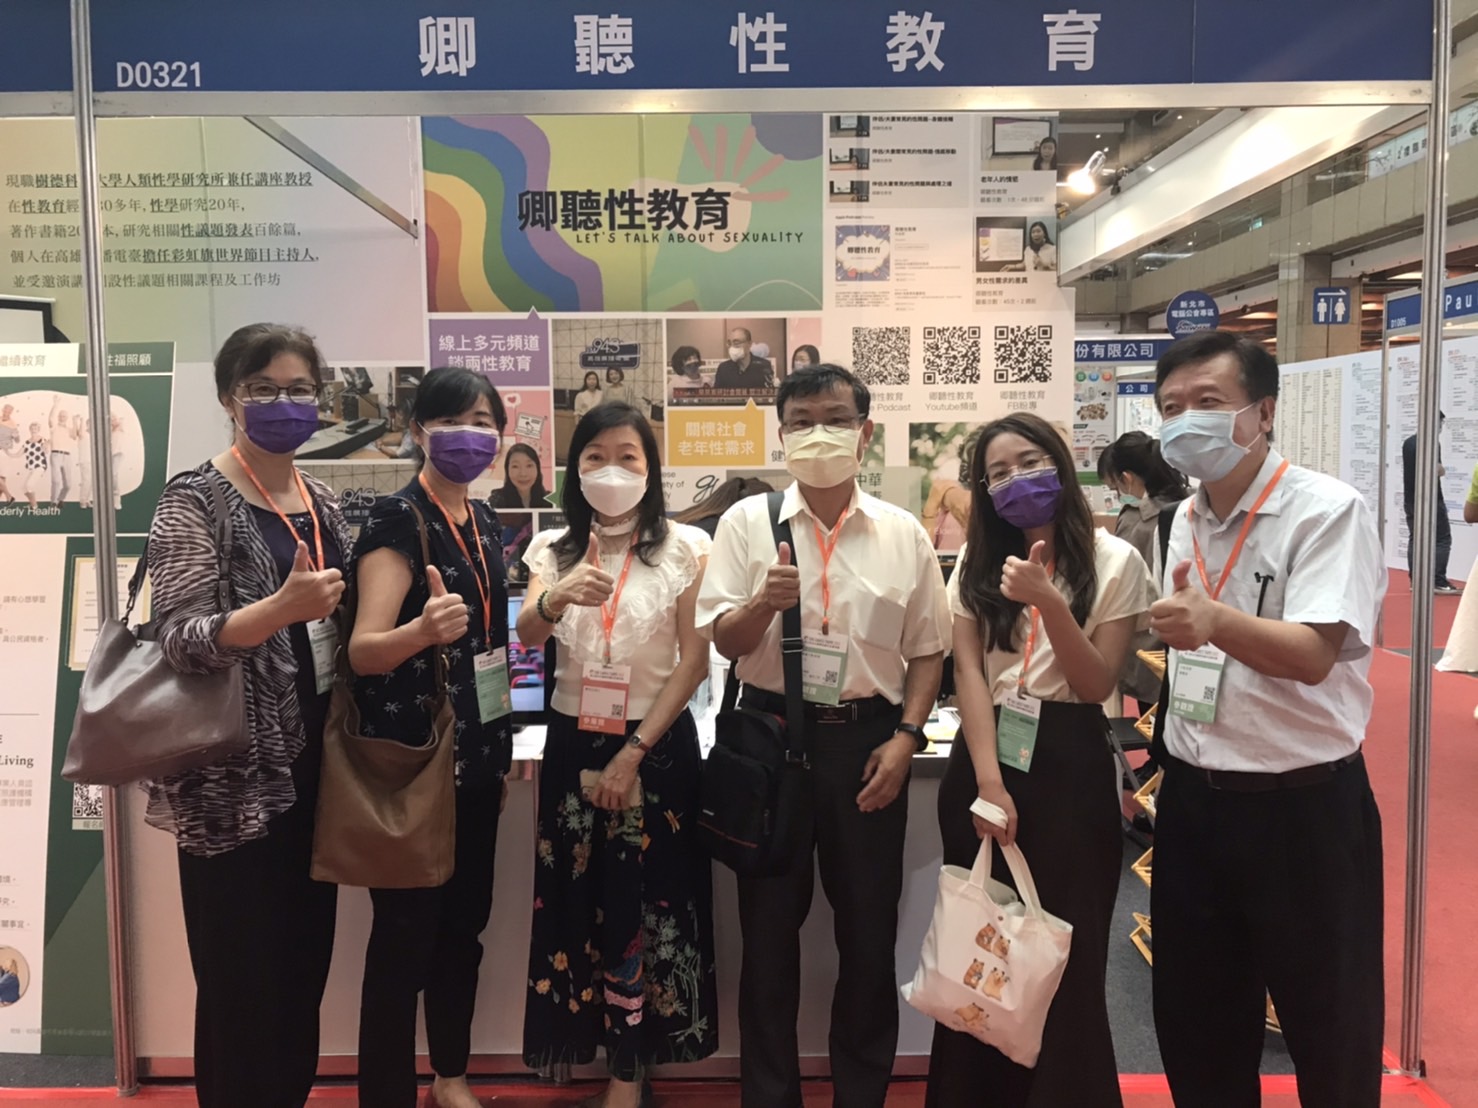 中彰榮家專業團隊參加台北國際照顧科技應用展觀摩學習